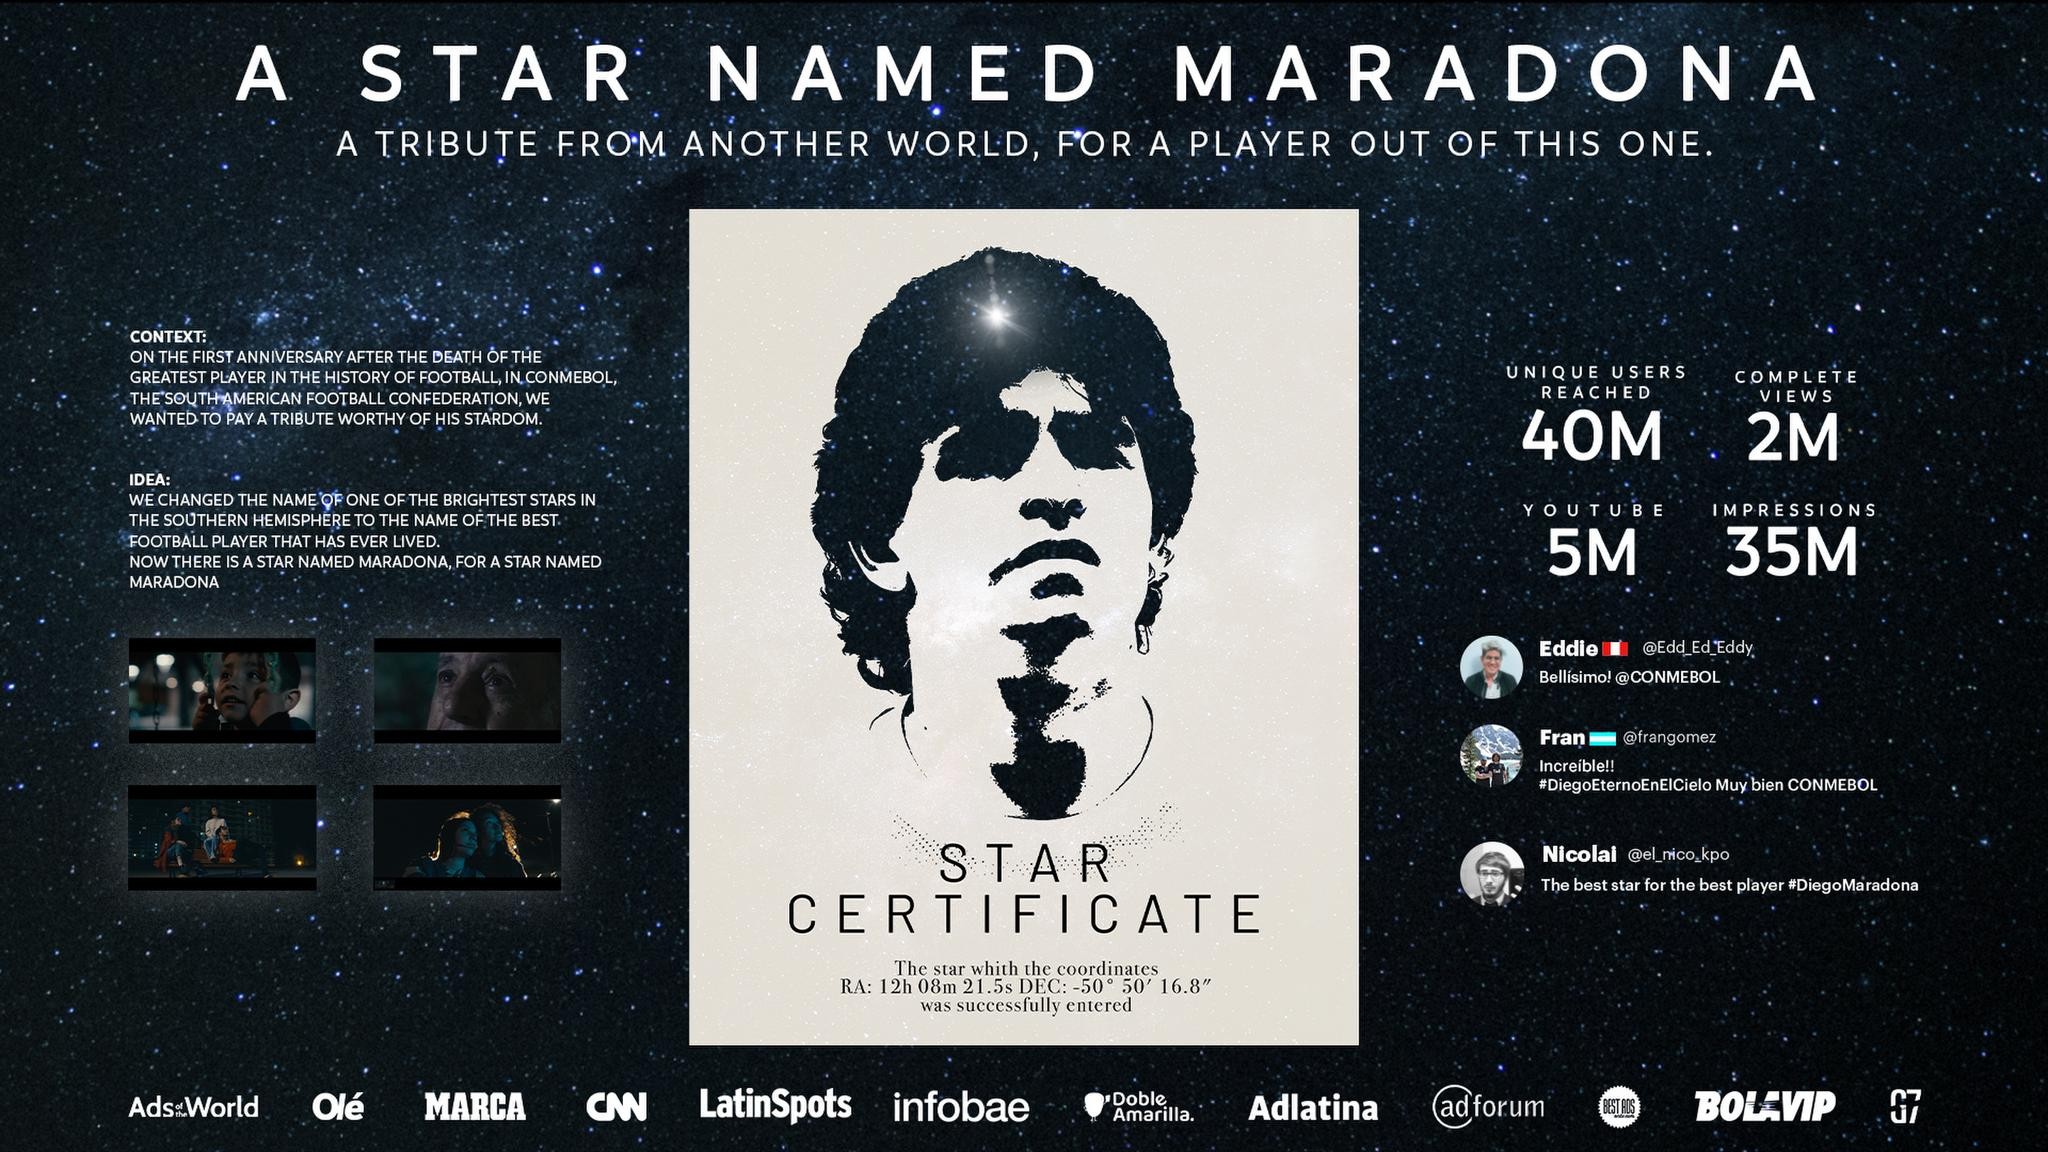 A star named Maradona